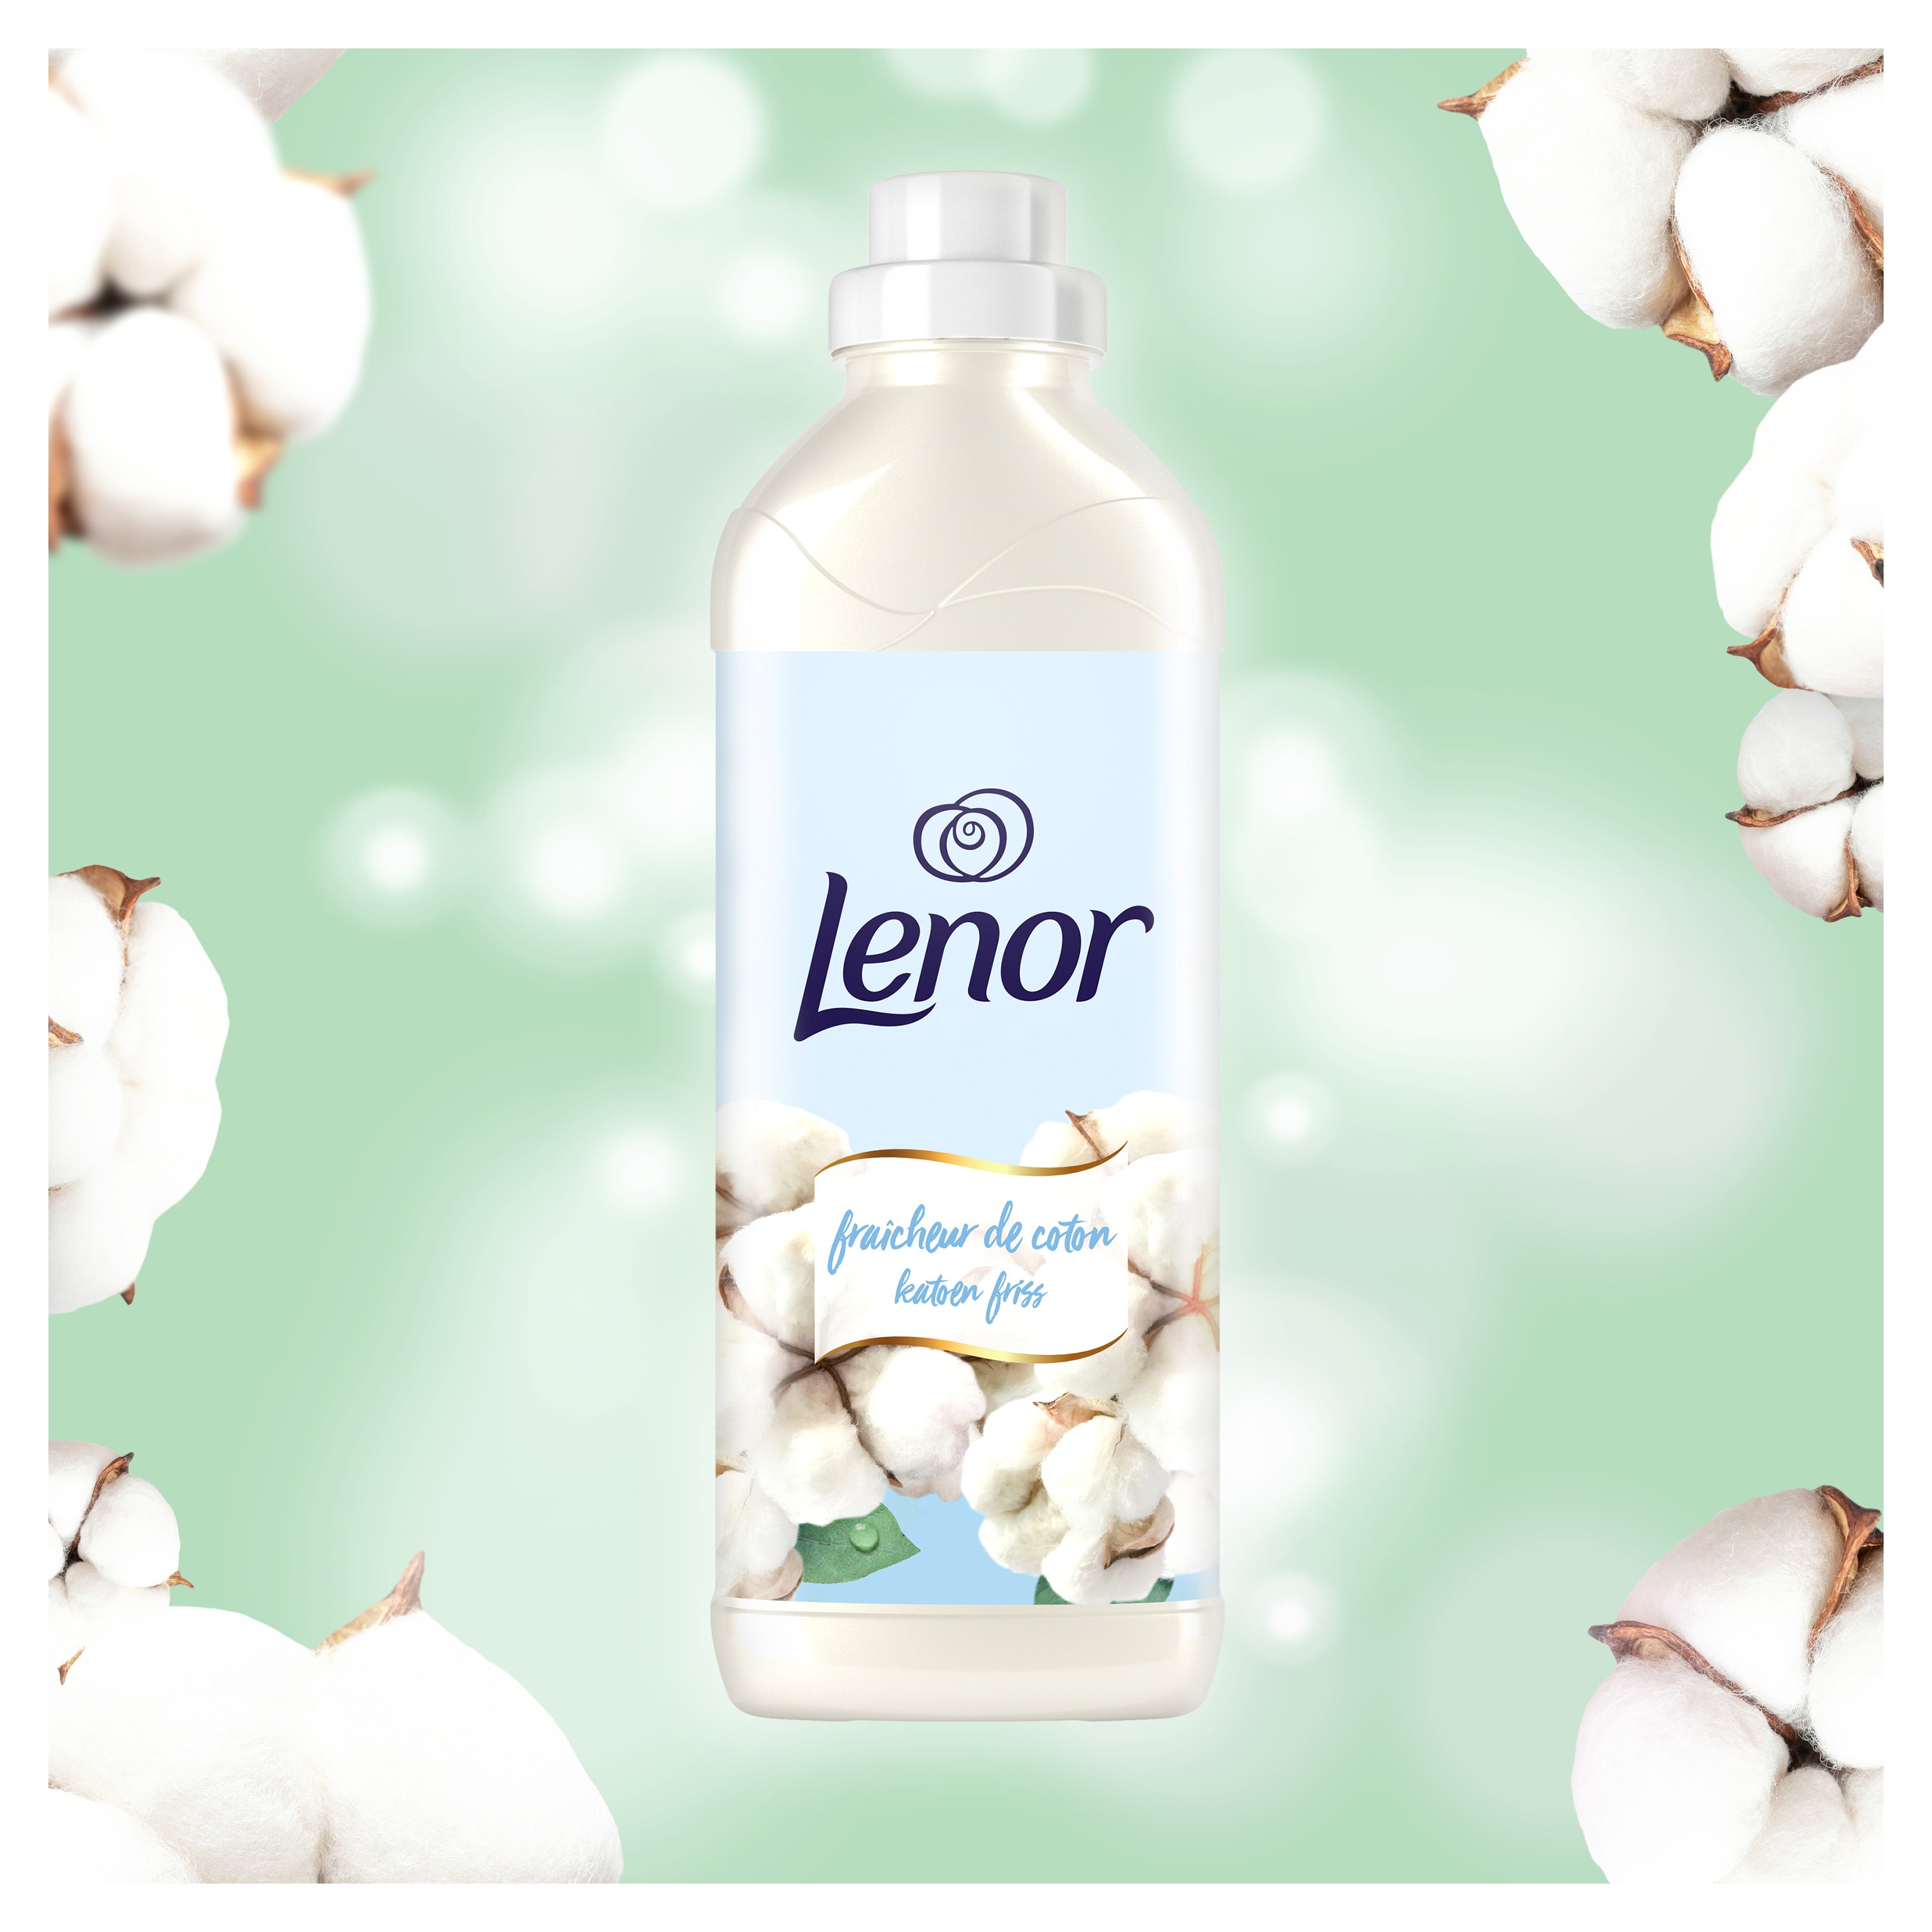 lenor-parfum-de-linge-fraicheur-de-coton